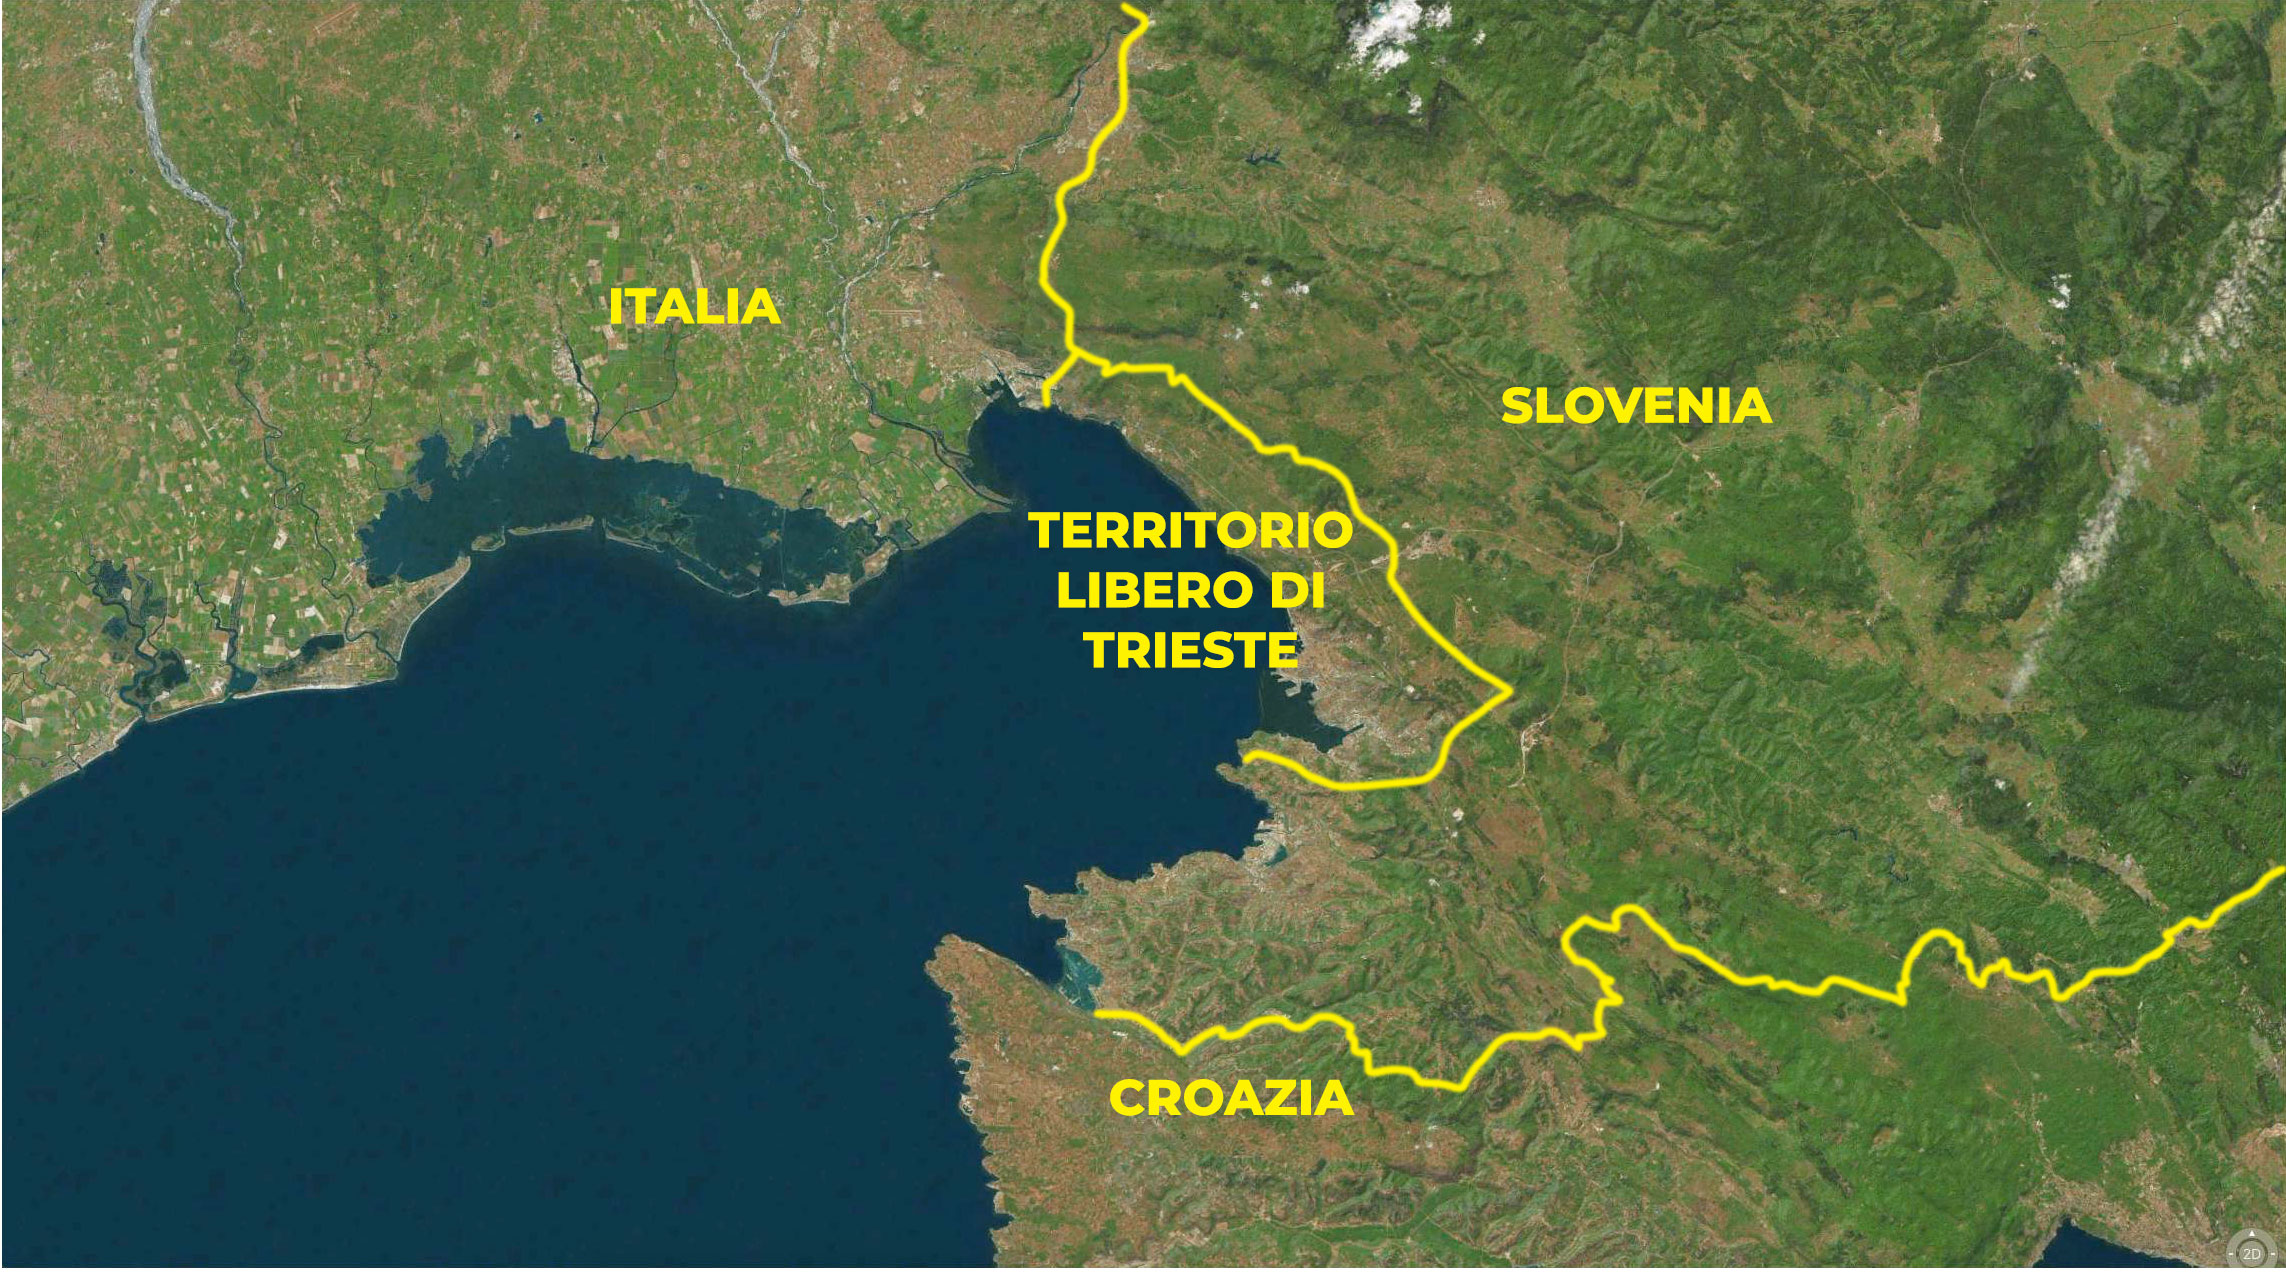 L'attuale Territorio Libero di Trieste con gli Stati confinanti (Italia e Slovenia) e vicini (Croazia).